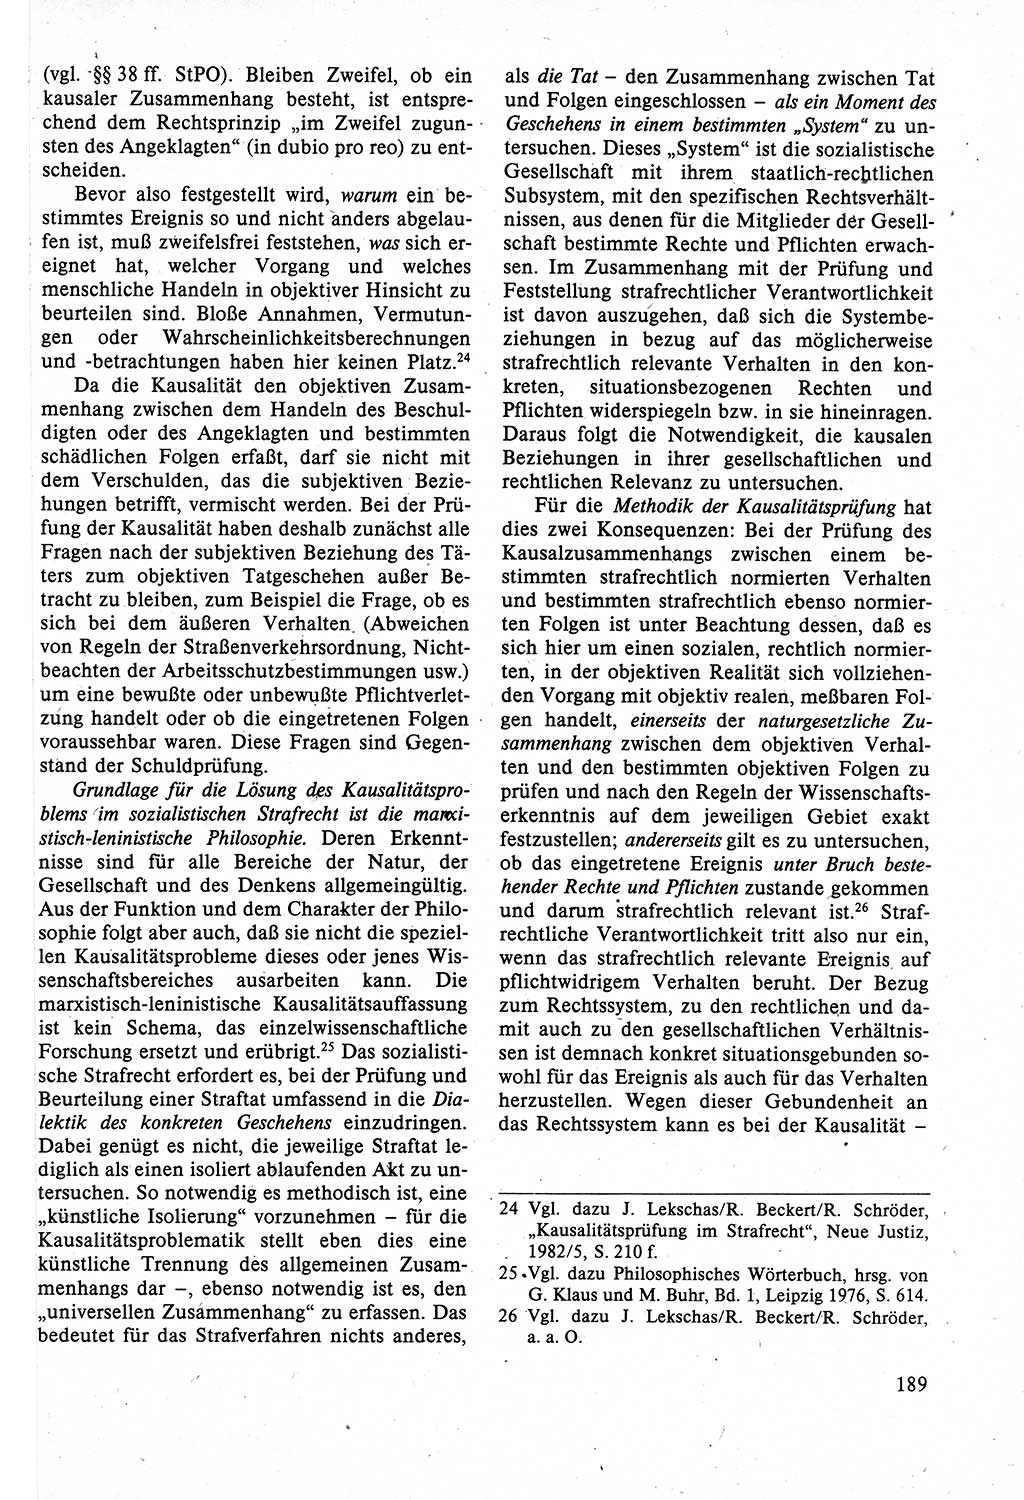 Strafrecht der DDR (Deutsche Demokratische Republik), Lehrbuch 1988, Seite 189 (Strafr. DDR Lb. 1988, S. 189)